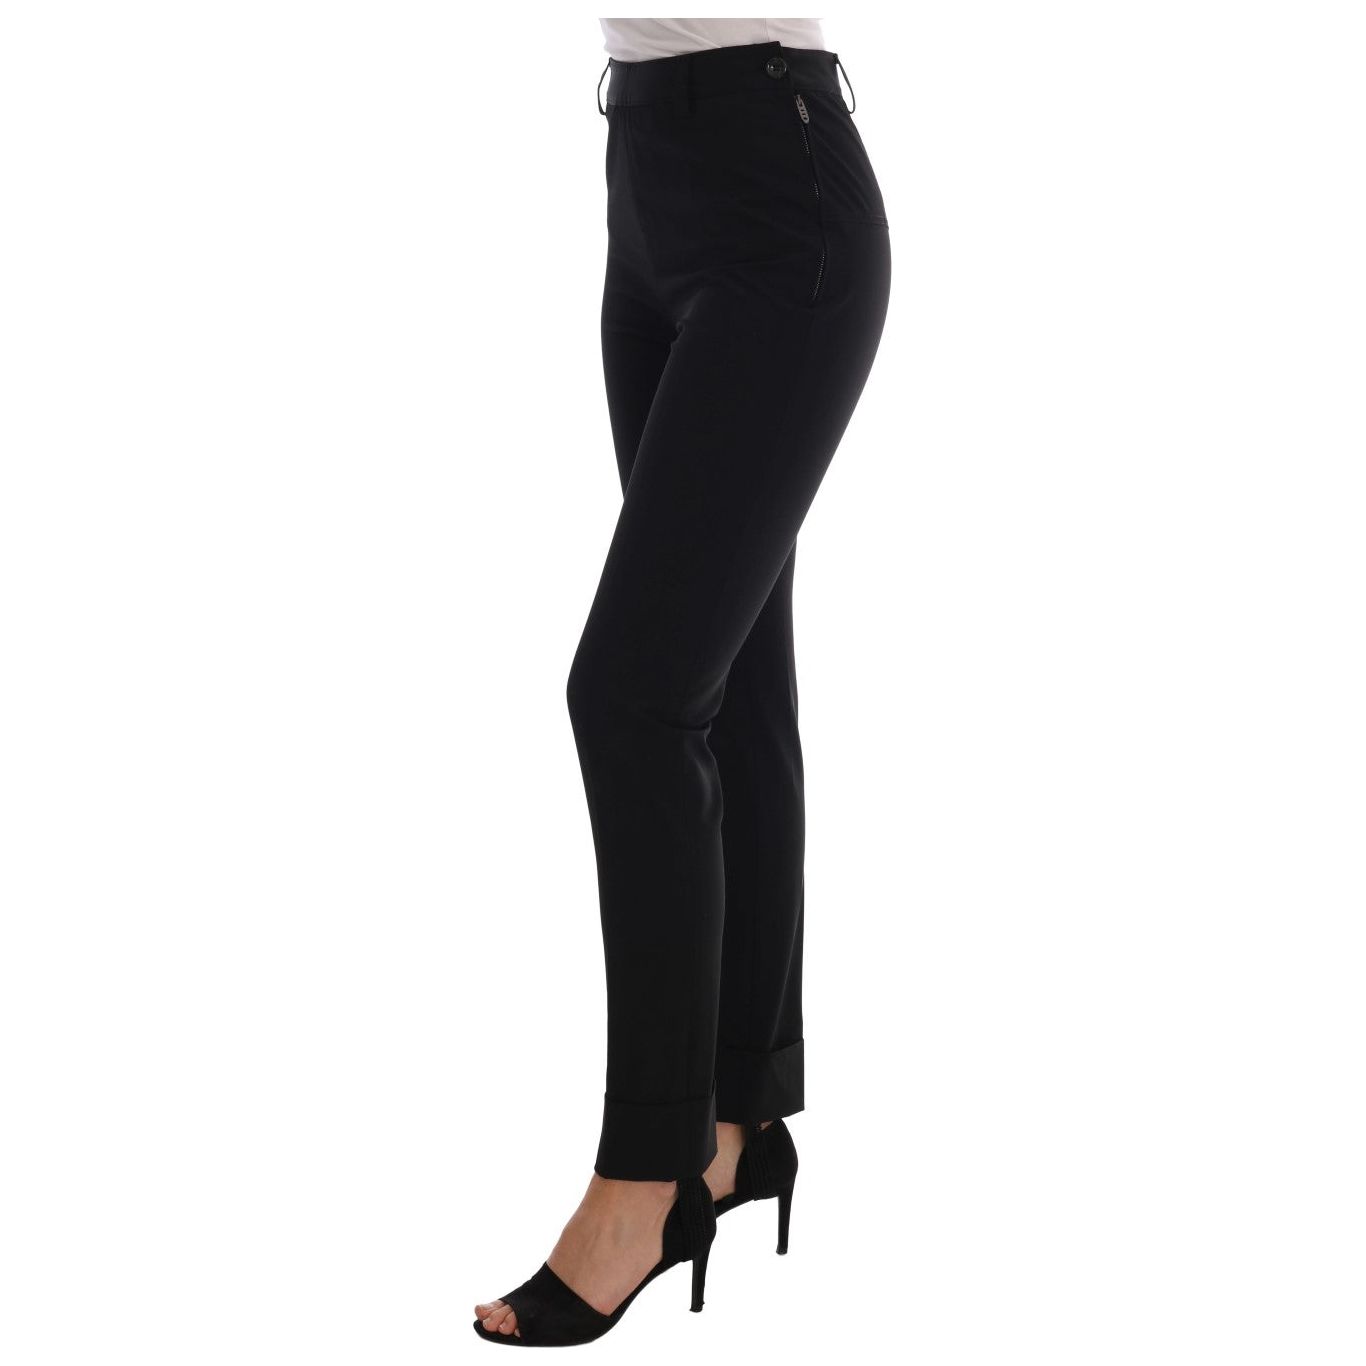 Ermanno Scervino Sleek Black Stirrup Leggings black-stretch-leggings-pants Jeans & Pants 495914-black-stretch-leggings-pants-1.jpg